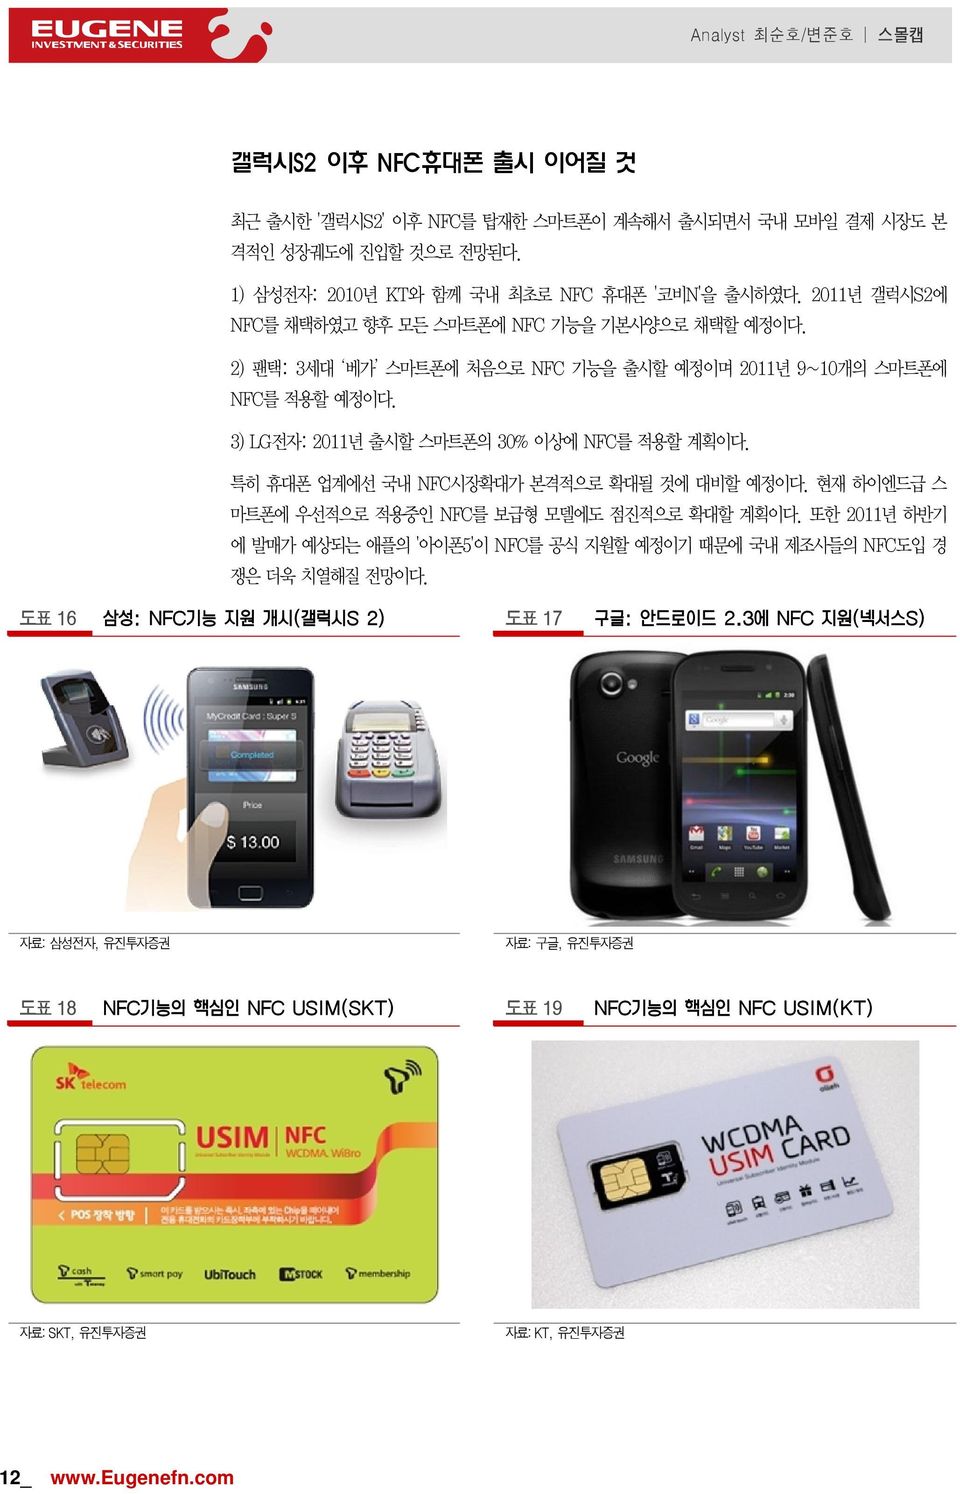 3) LG전자: 2011년 출시할 스마트폰의 30% 이상에 NFC를 적용할 계획이다. 특히 휴대폰 업계에선 국내 NFC시장확대가 본격적으로 확대될 것에 대비할 예정이다. 현재 하이엔드급 스 마트폰에 우선적으로 적용중인 NFC를 보급형 모델에도 점진적으로 확대할 계획이다.